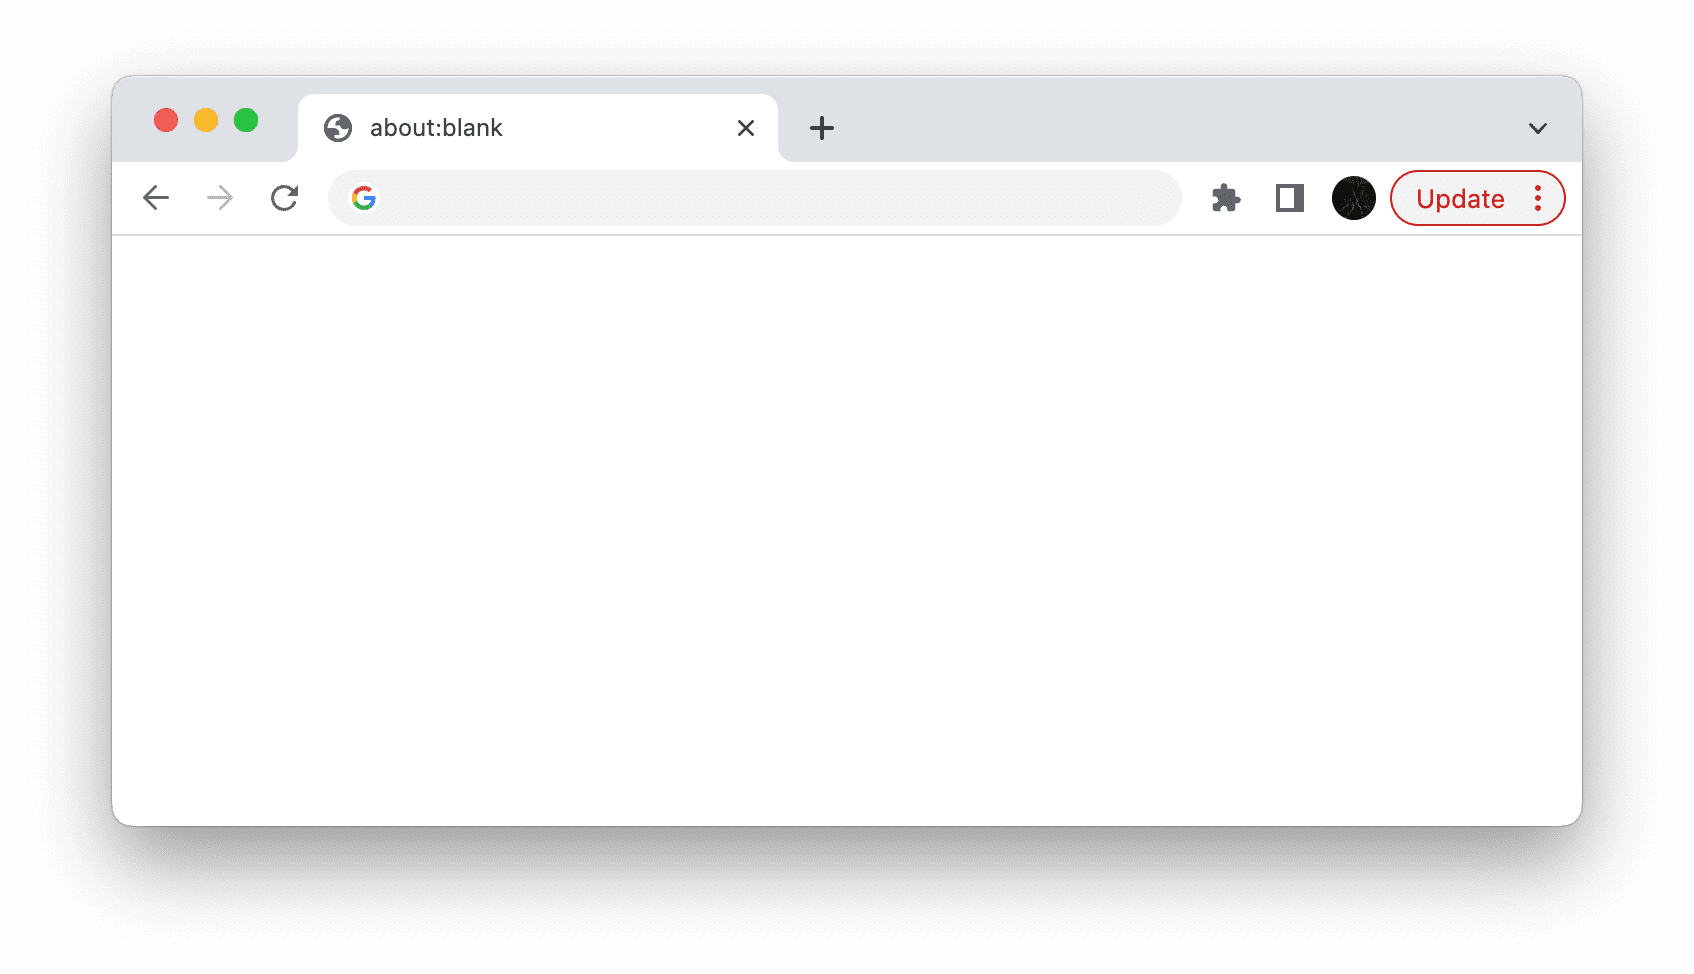 Chrome में बारे में:खाली है, जिसमें लाल रंग का अपडेट करें बटन है.